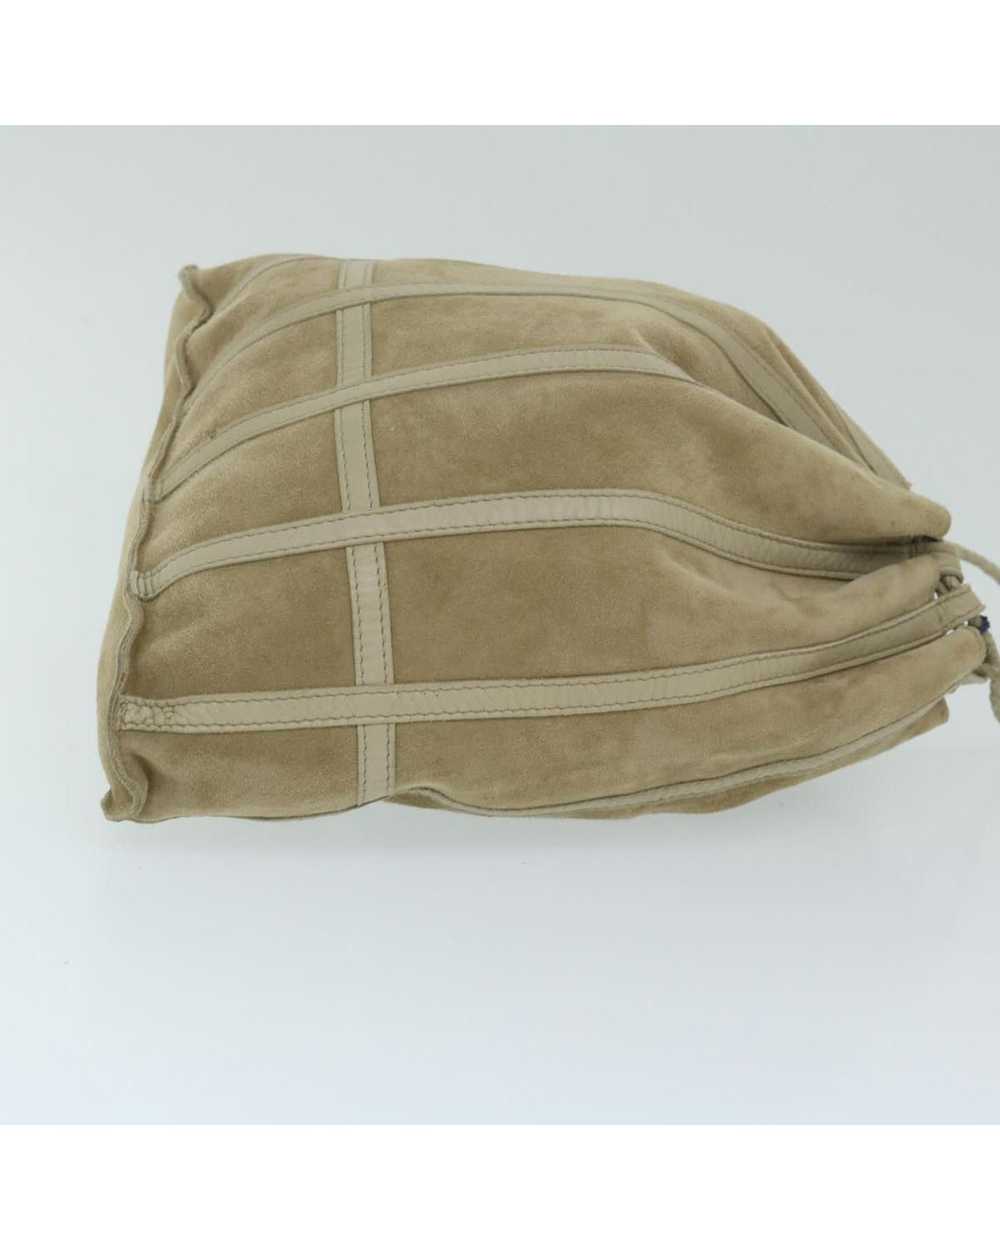 Bottega Veneta Beige Suede Shoulder Bag with Dust… - image 4